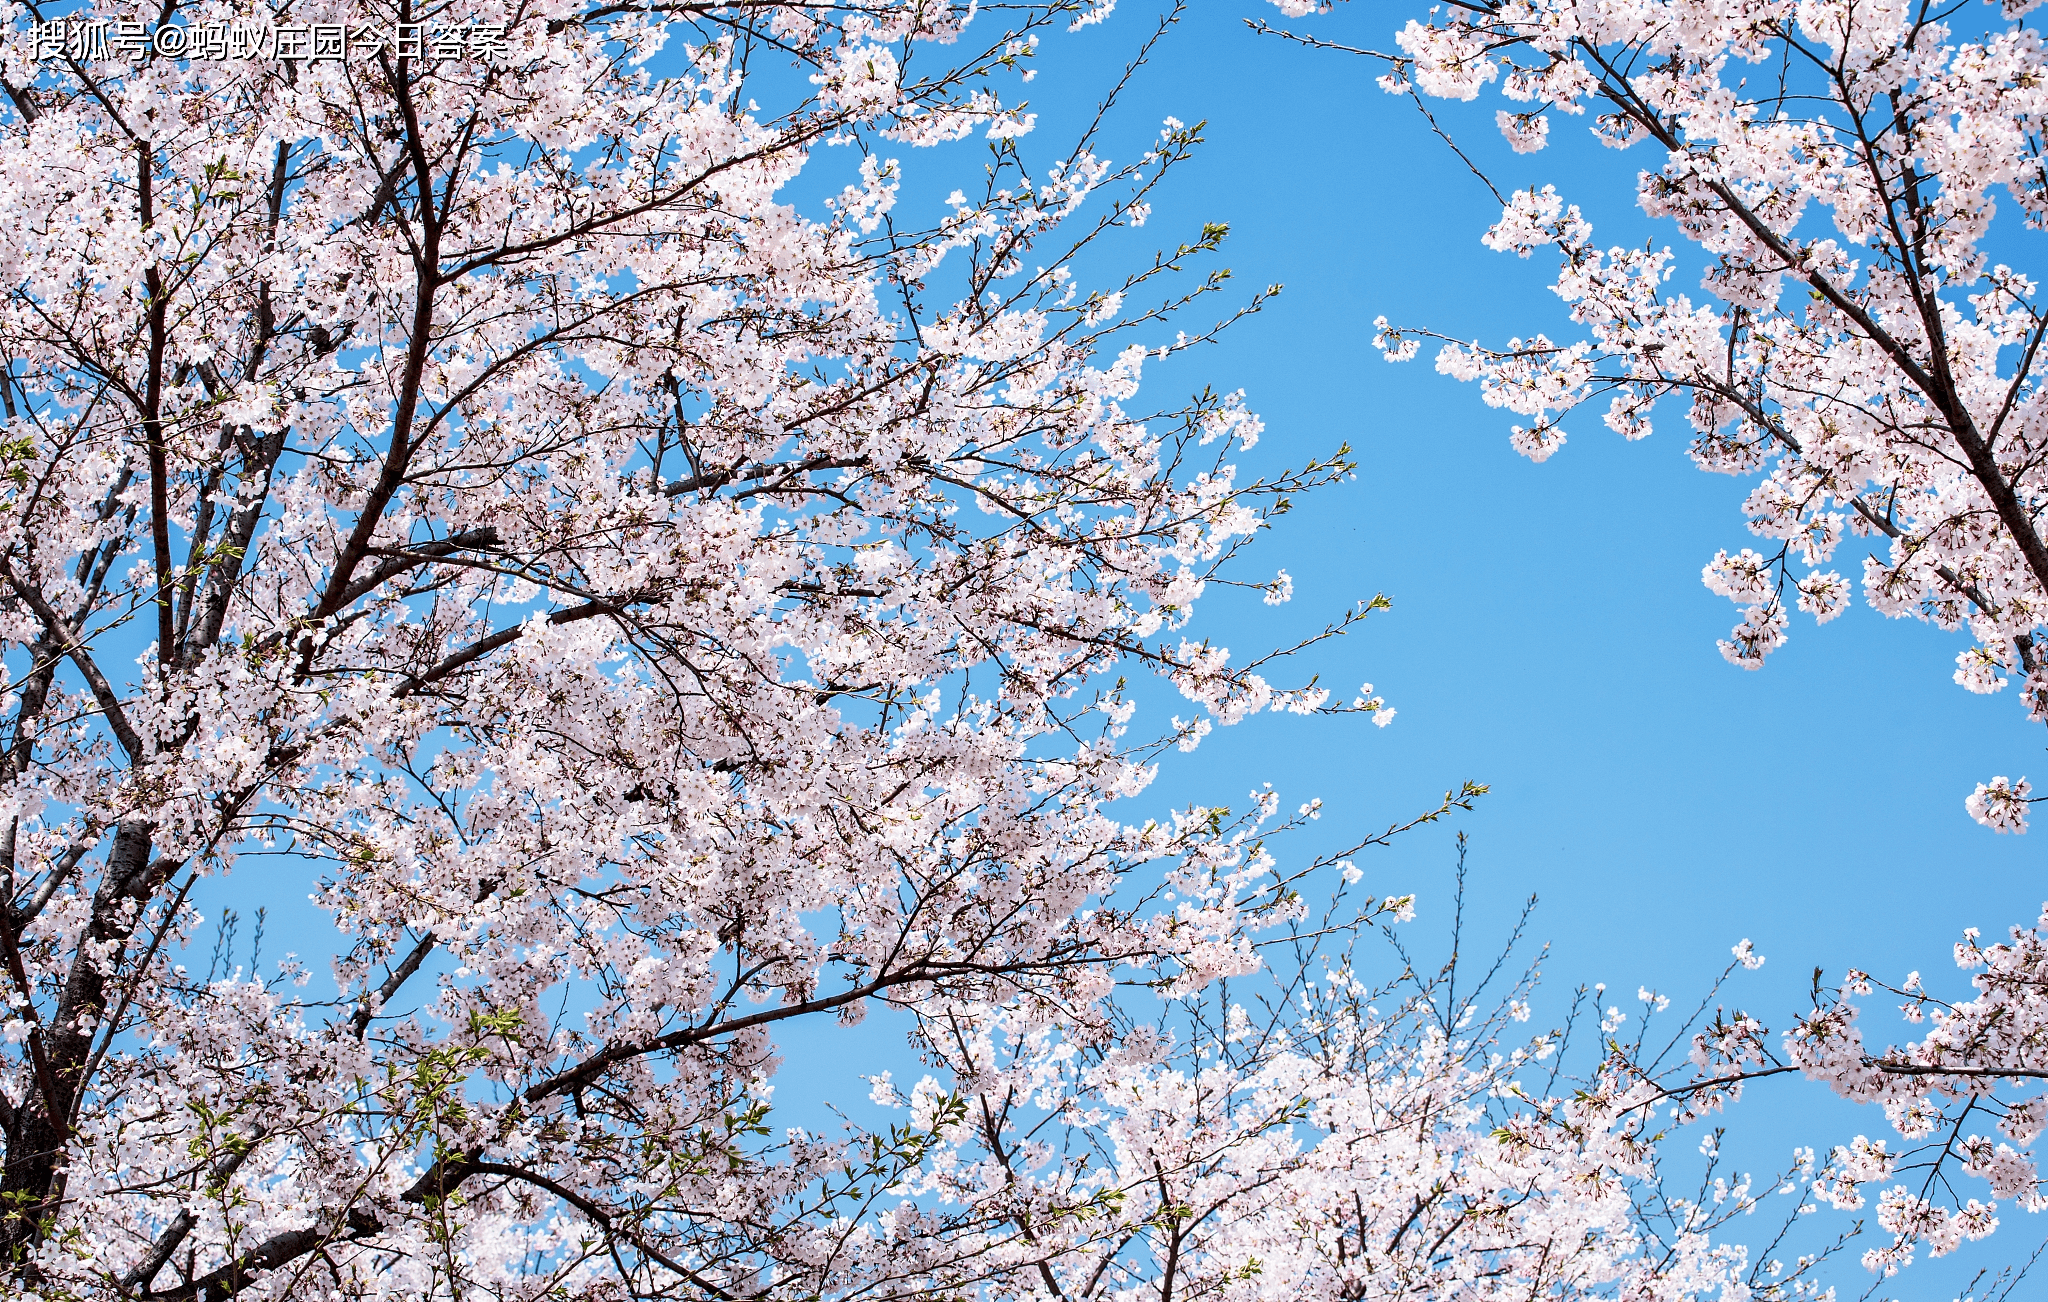 小巷几乎都能够看到樱花树,等到樱花花期,日本樱花盛开,唯美而浪漫